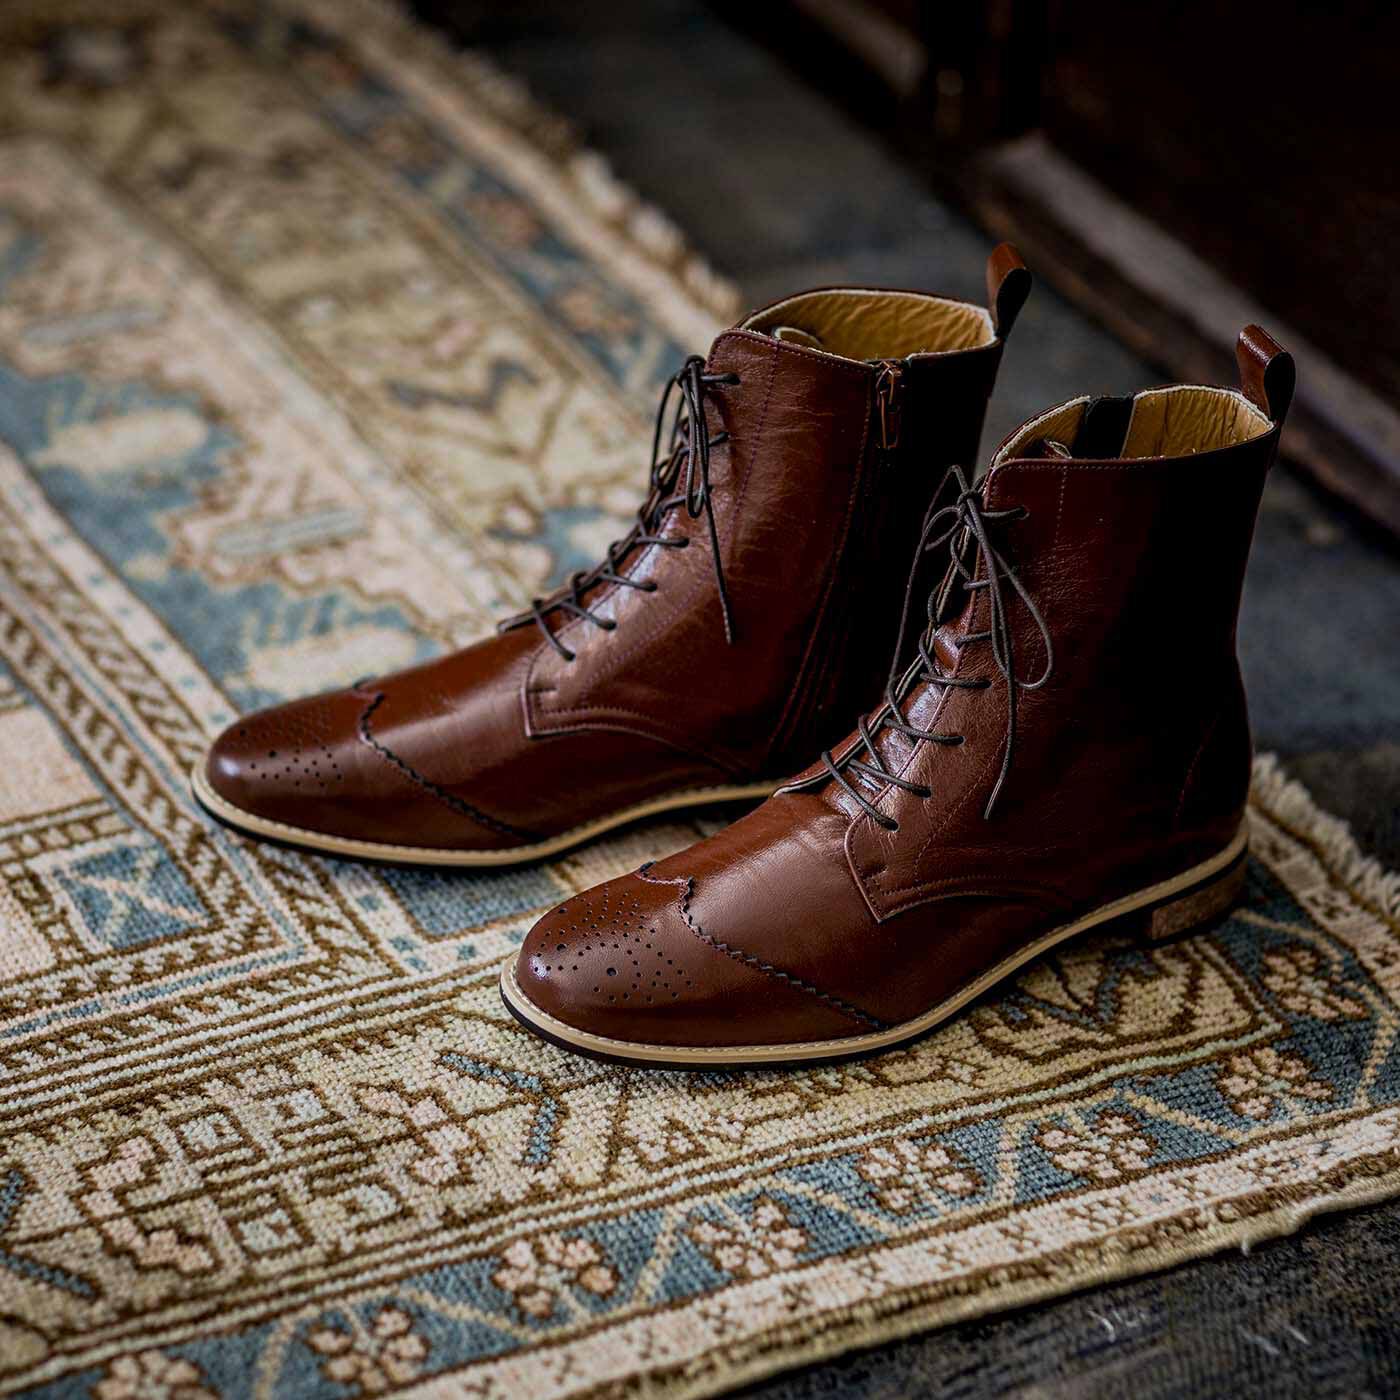 ＆Stories|長田の靴職人が作った　職人本革のウィングチップブーツ〈レッドブラウン〉|神戸長田・本革靴シリーズの中でも名品といわれる、編み上げのウイングチップブーツ。